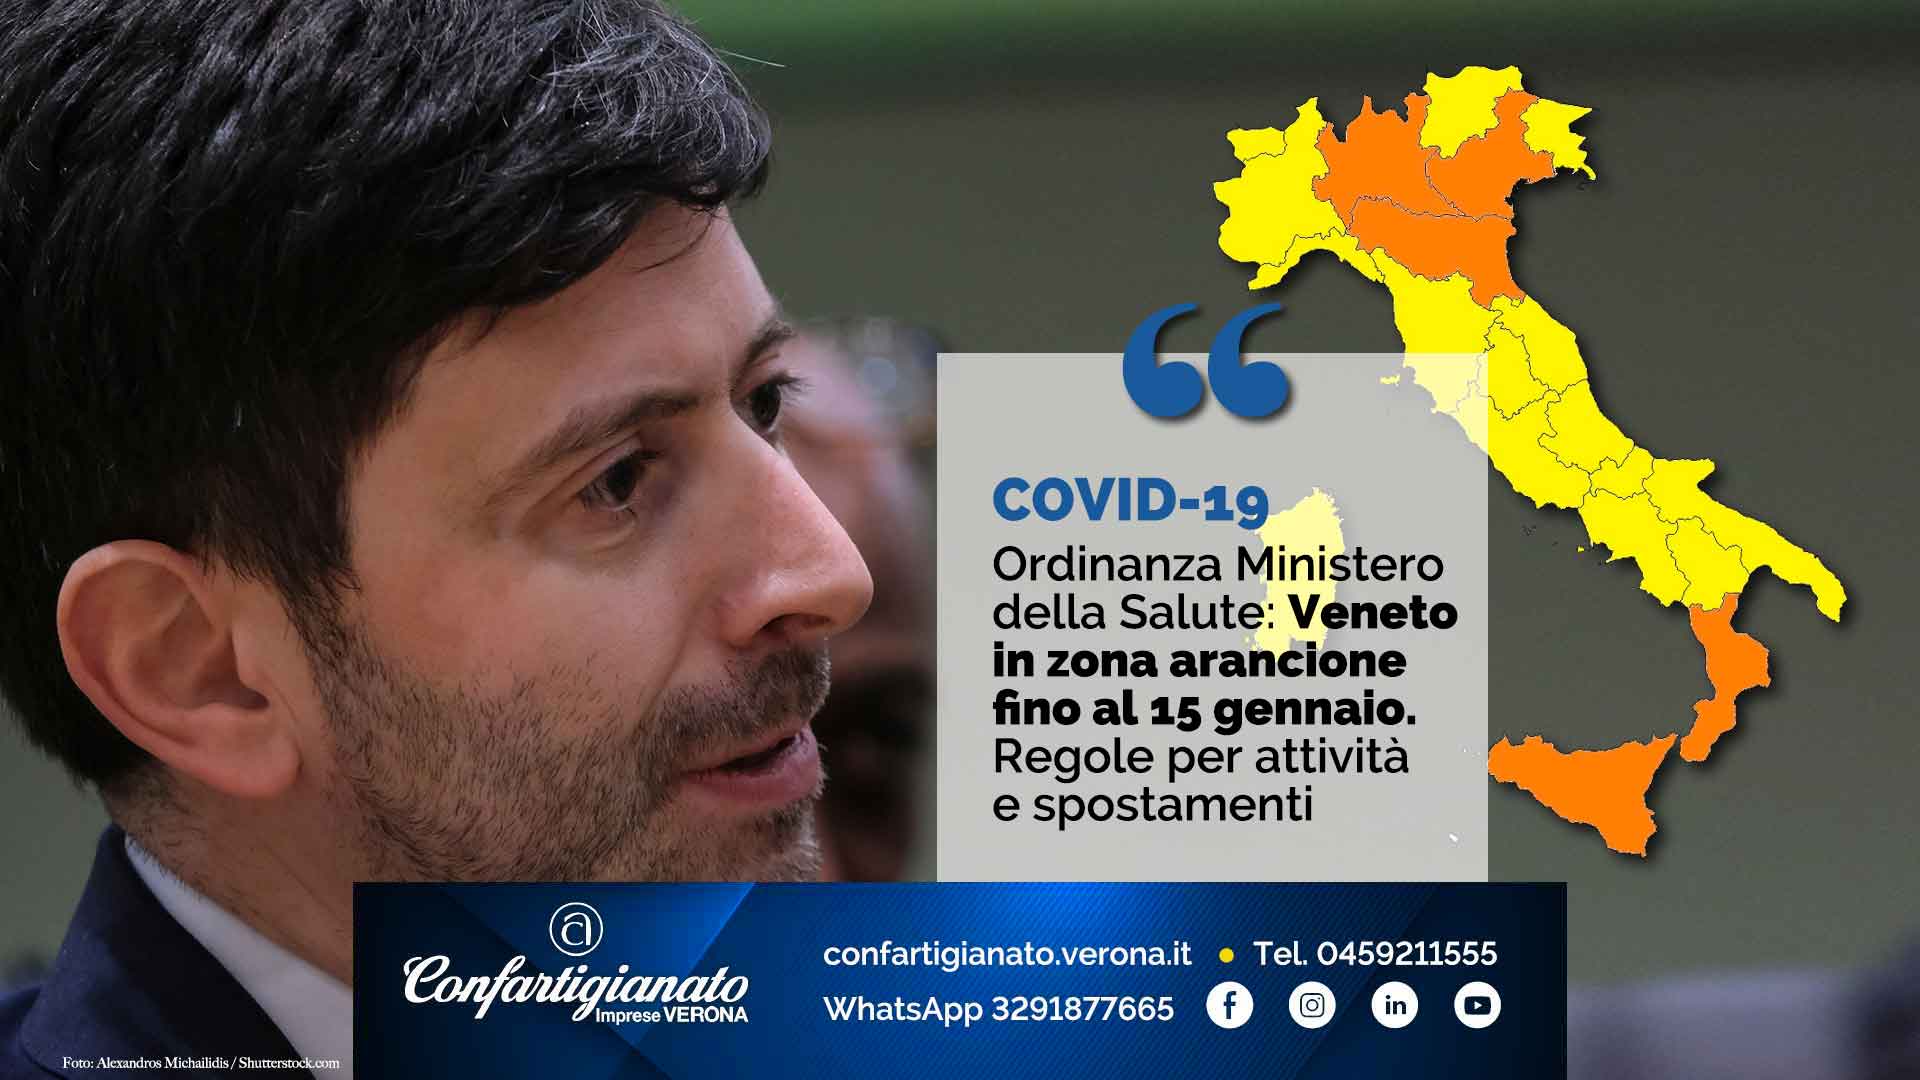 COVID-19 – Ordinanza Ministero della Salute: Veneto in zona arancione fino al 15 gennaio. Regole per attività e spostamenti